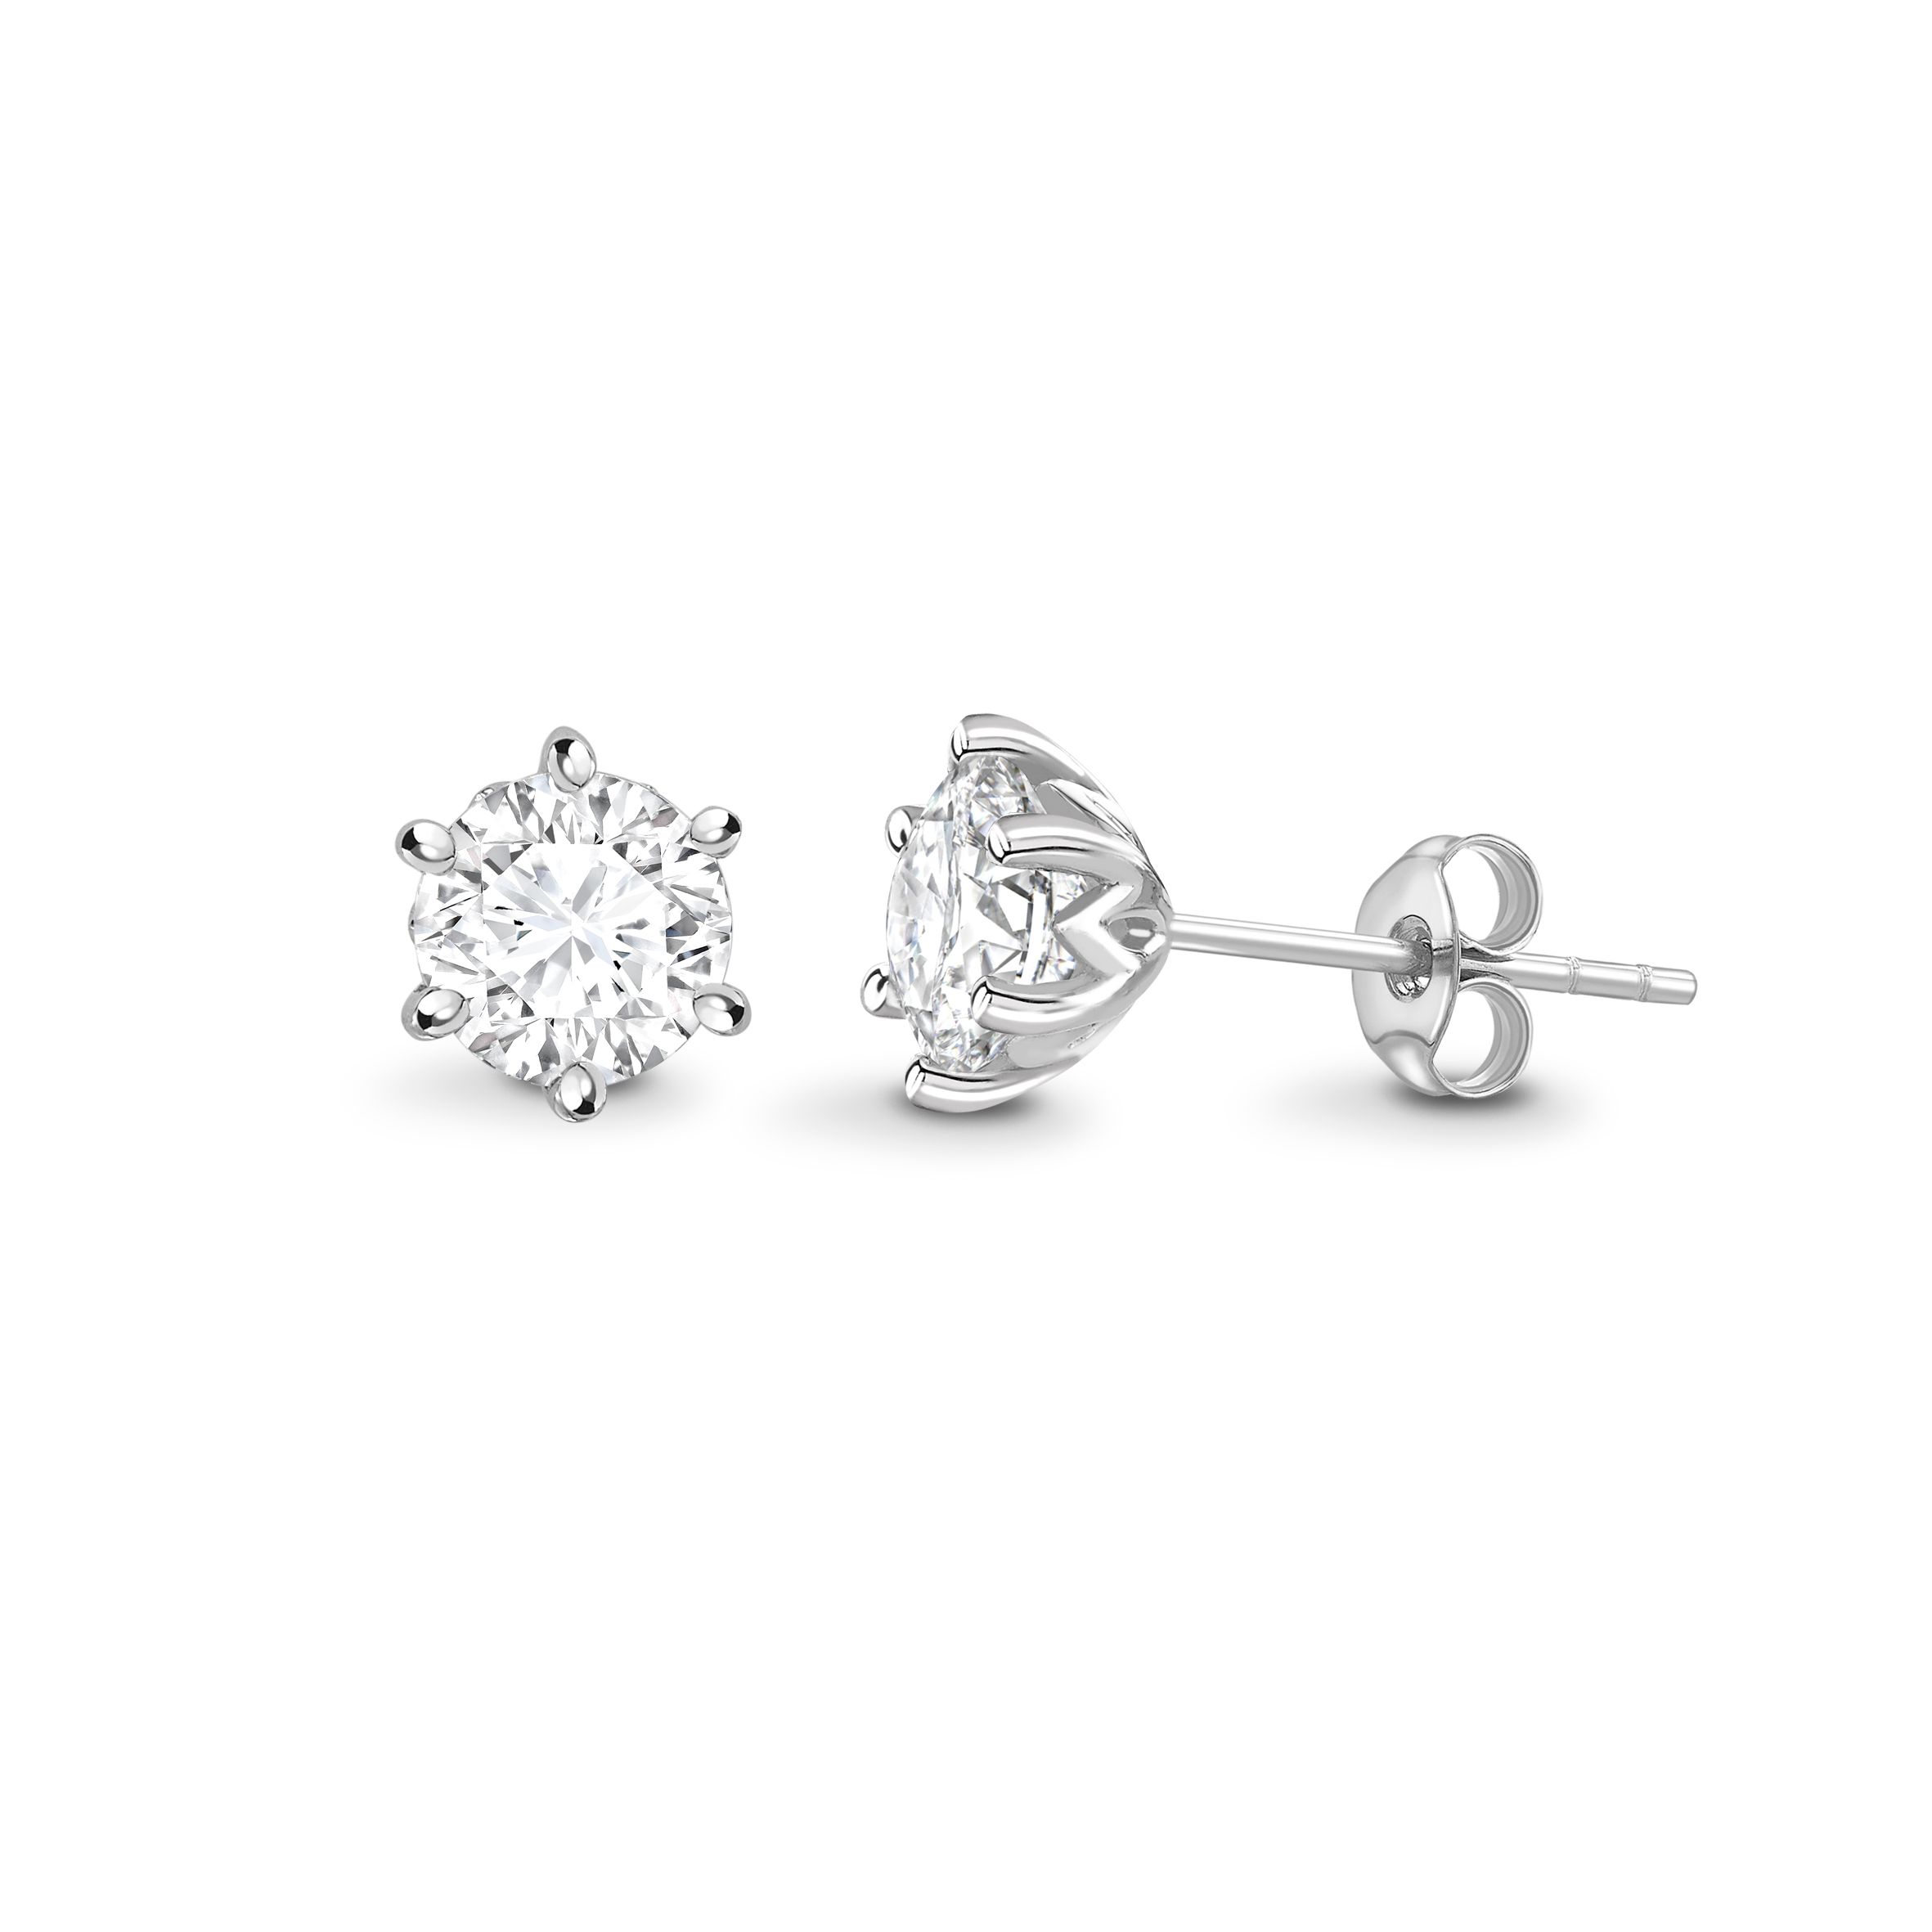 Share 74+ 6 prong diamond earrings latest - esthdonghoadian